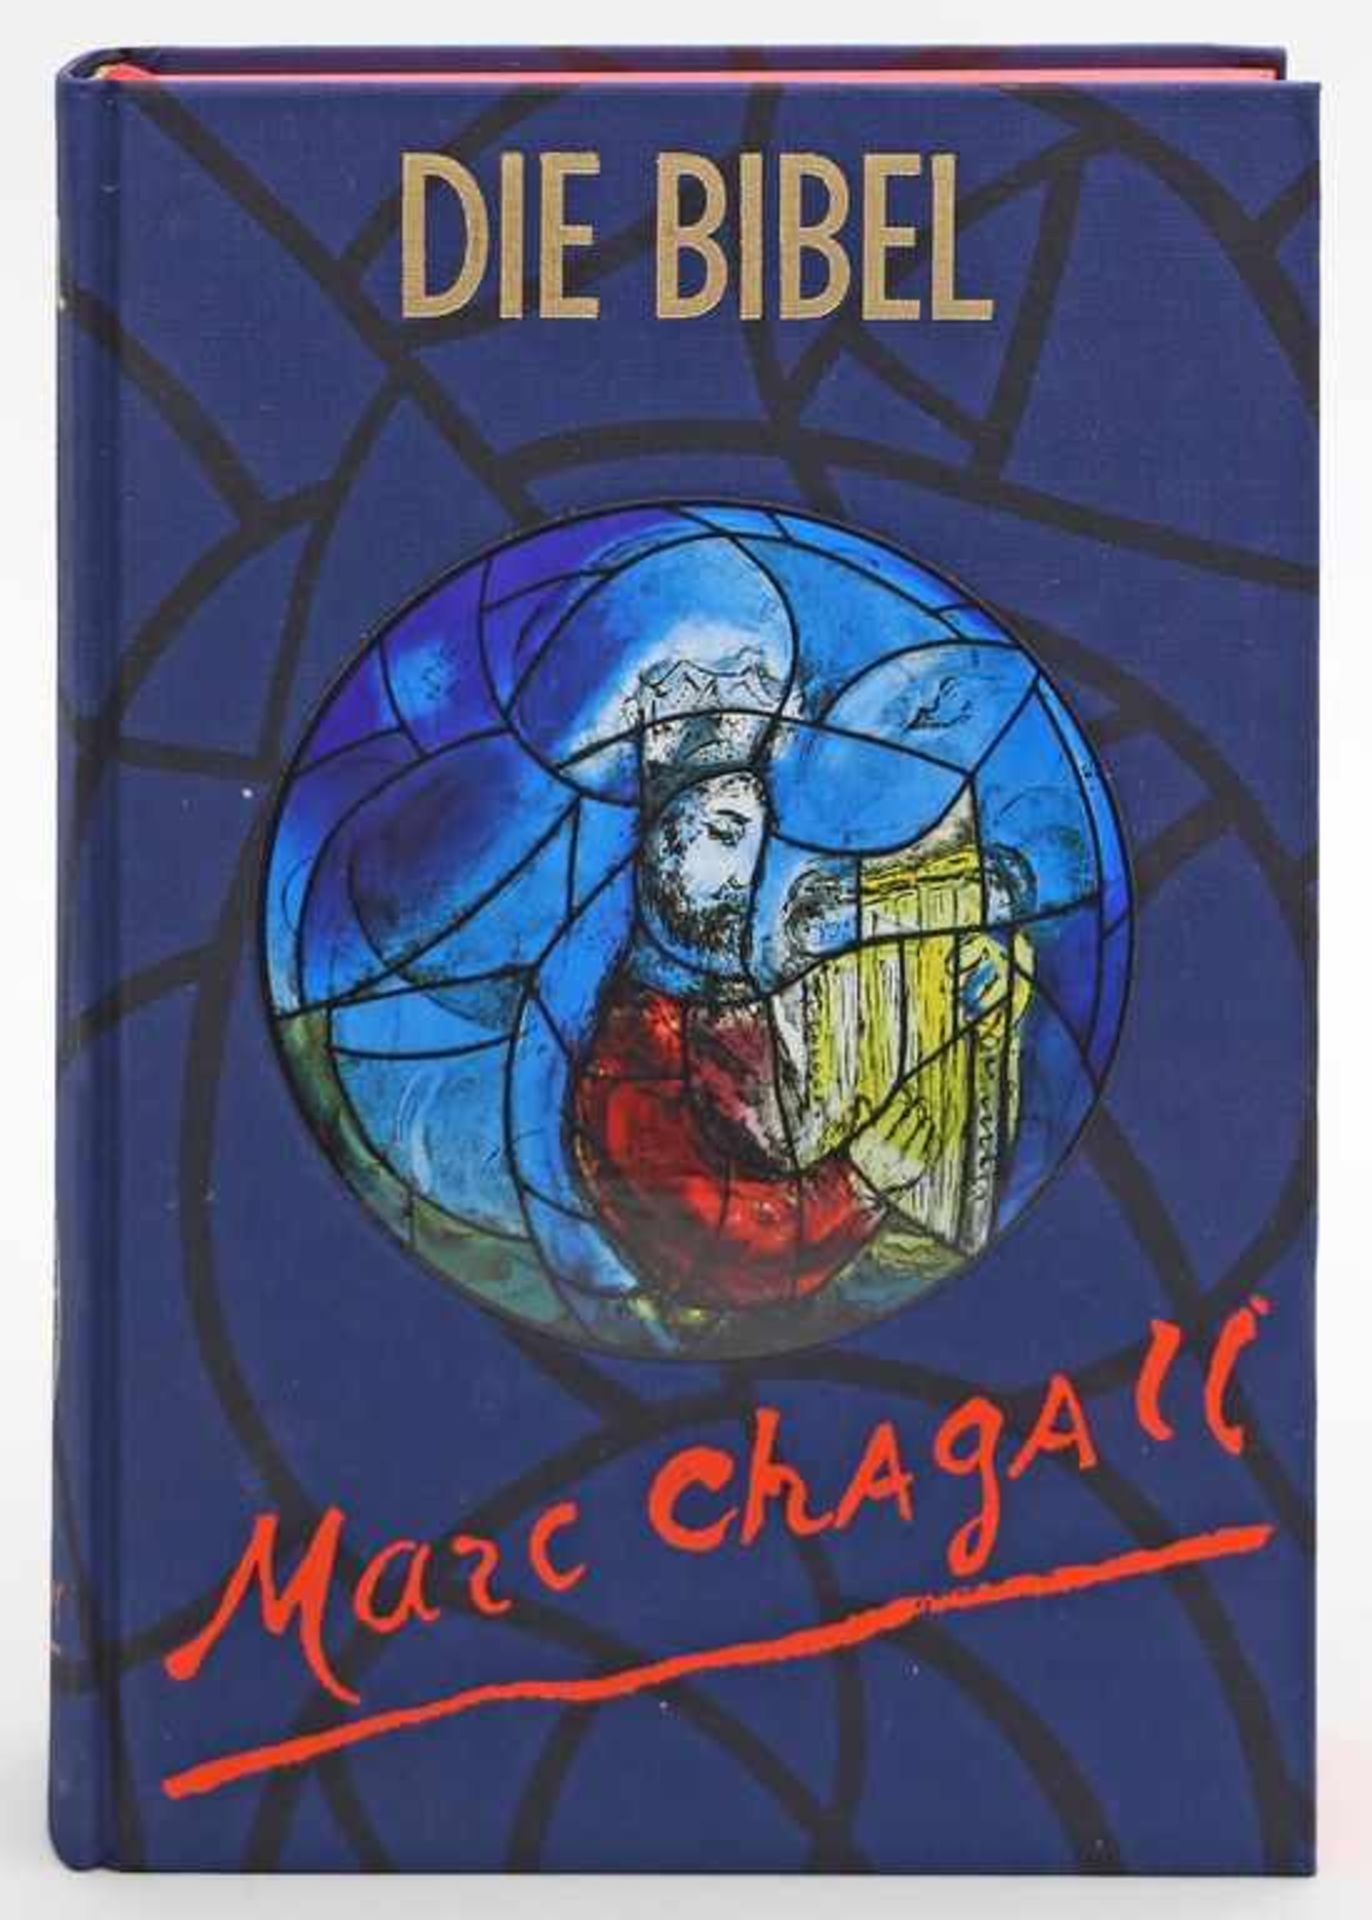 Chagall, Marc (1887-1985)Künstlerbibel, illustriert von Marc Chagall, mit ca. 40 farbigen,